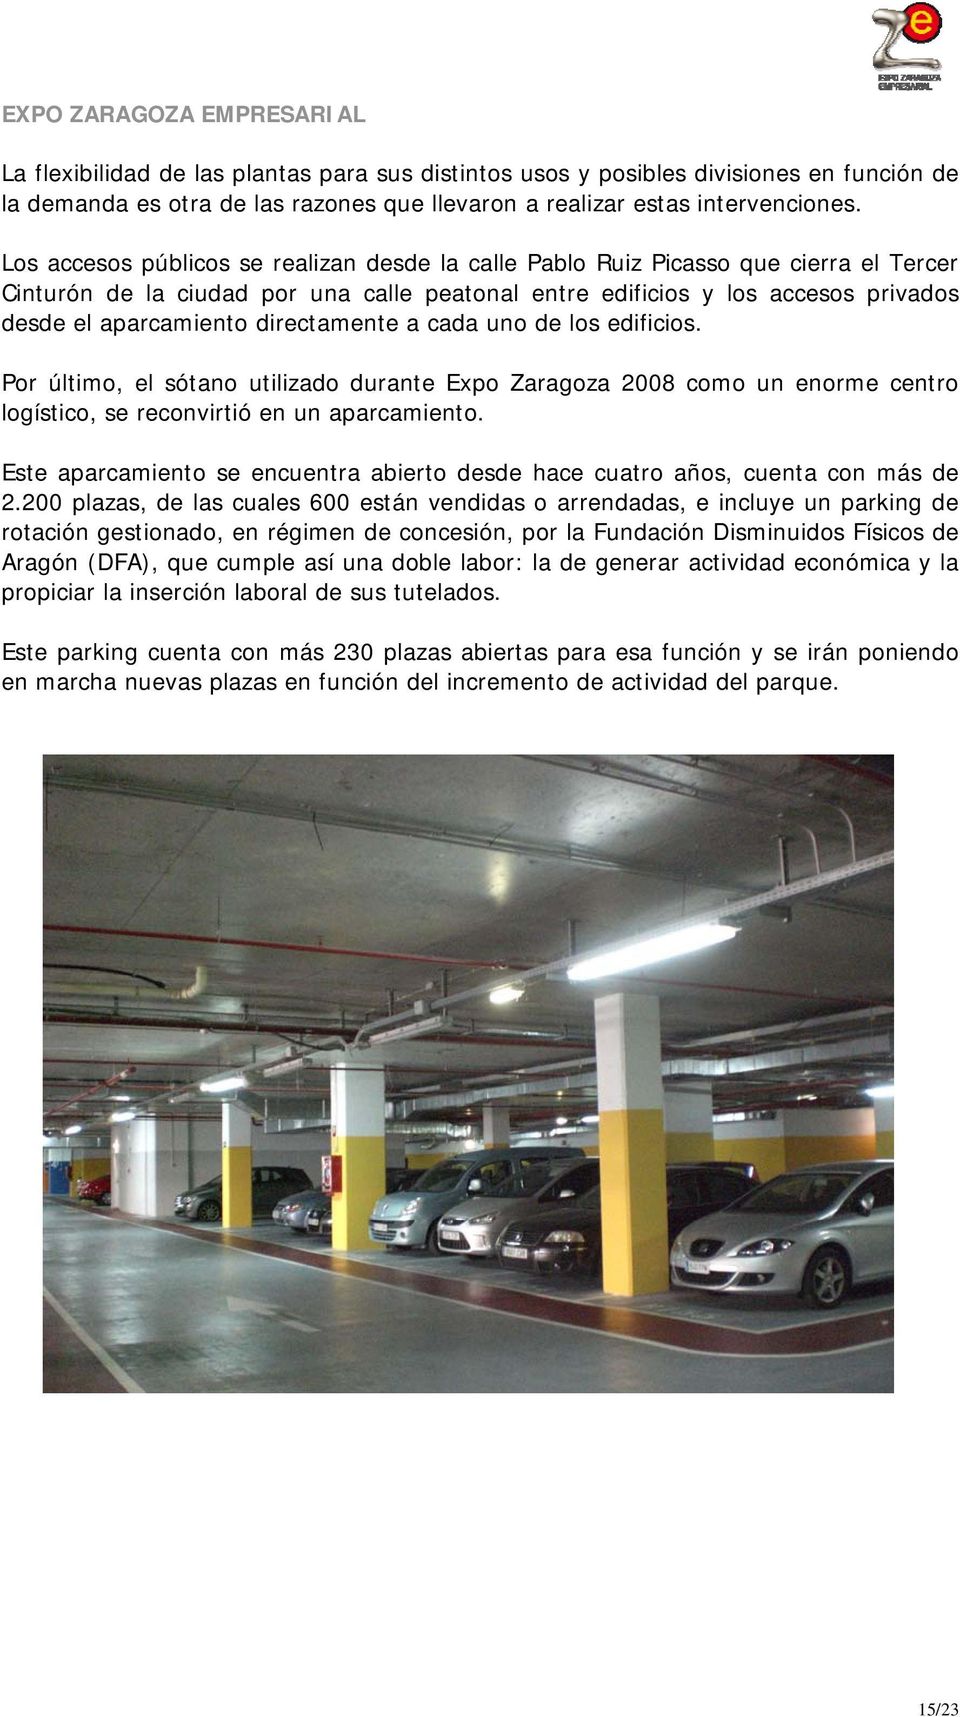 directamente a cada uno de los edificios. Por último, el sótano utilizado durante Expo Zaragoza 2008 como un enorme centro logístico, se reconvirtió en un aparcamiento.